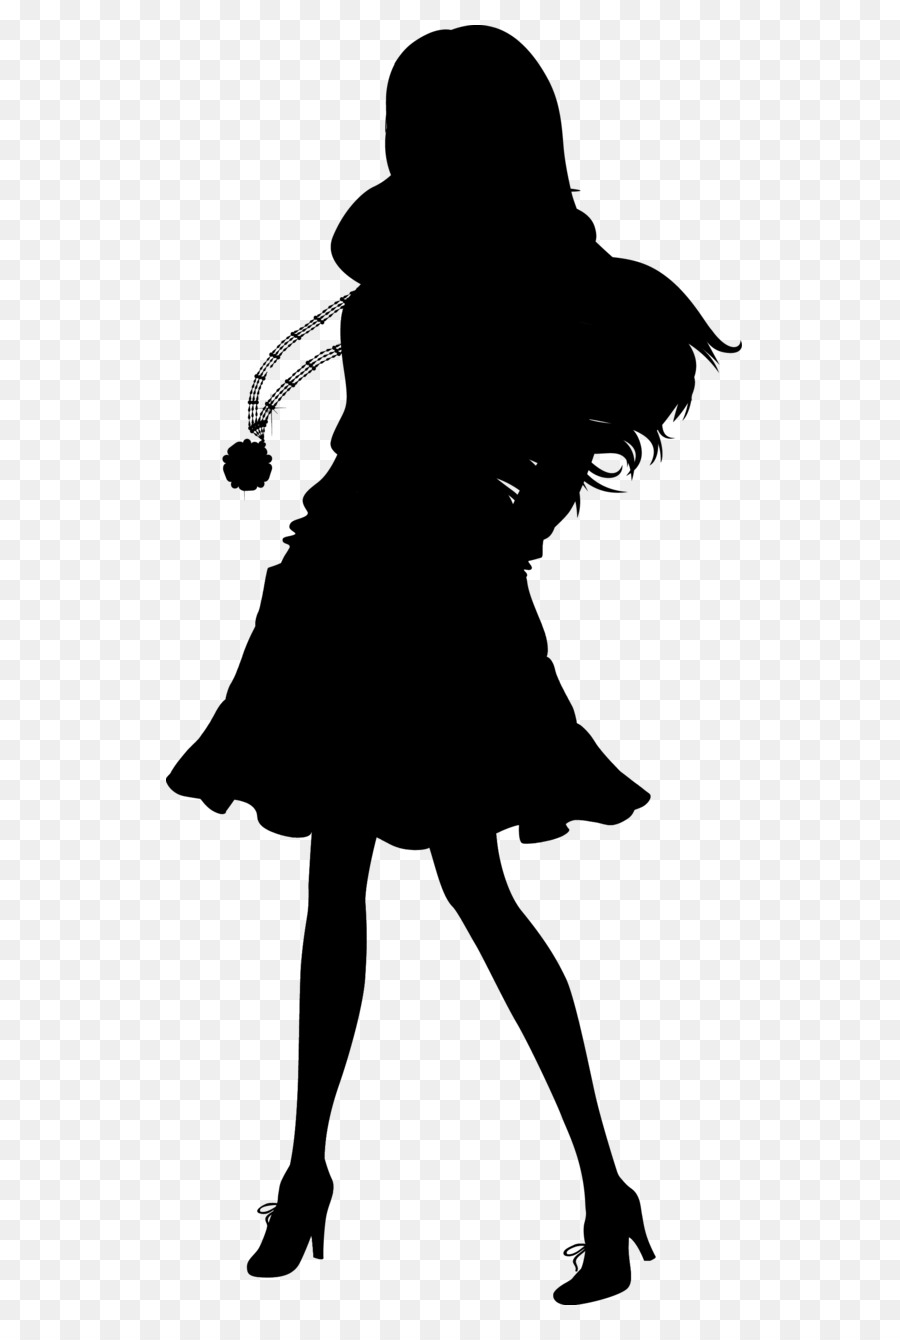 Sakura Haruno Silhouette Naruto Image Illustration -  png download - 630*1327 - Free Transparent Sakura Haruno png Download.